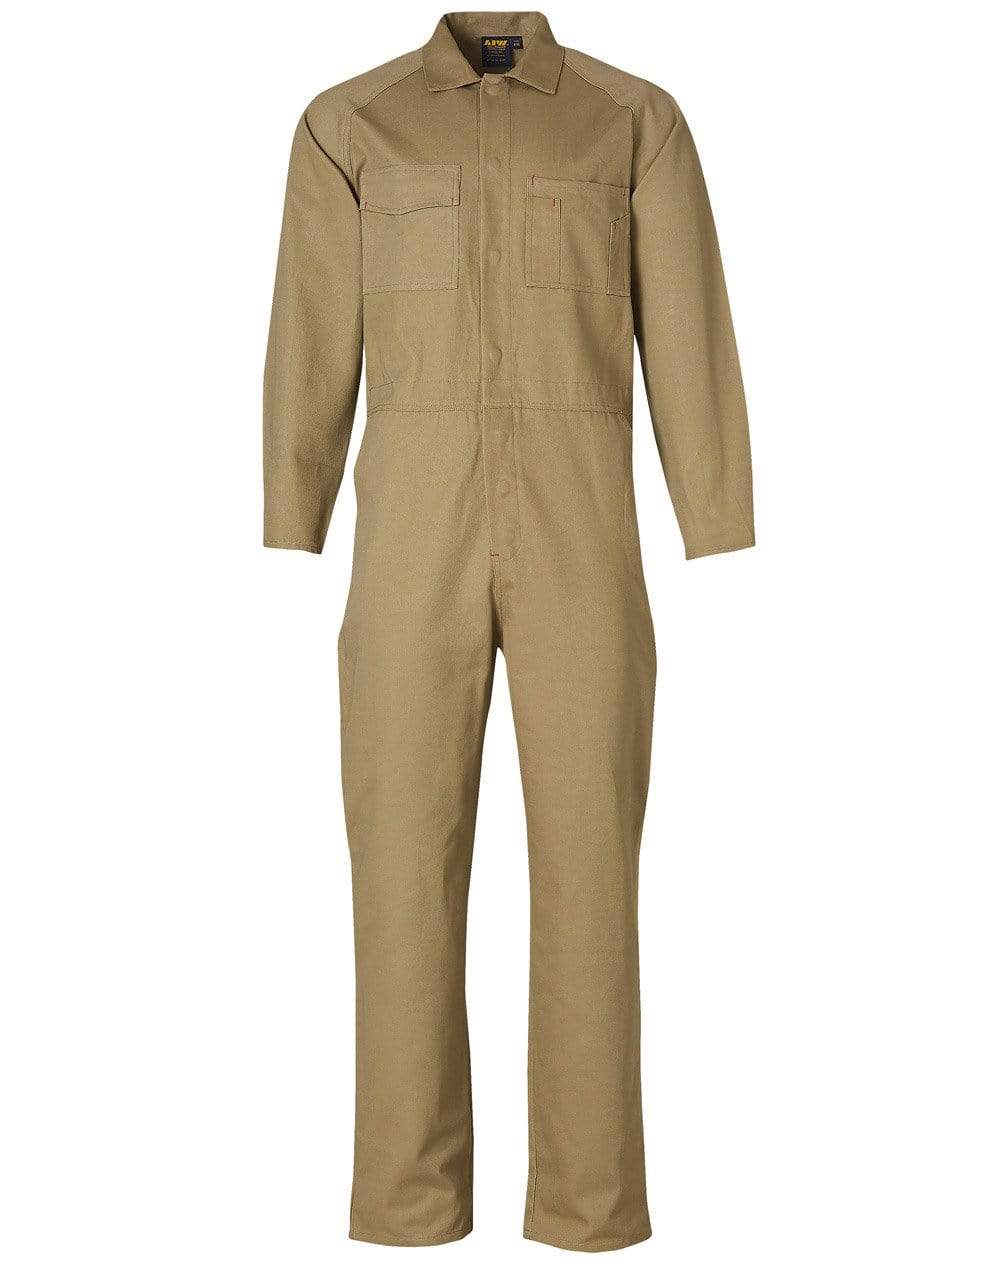 Men's Coverall Regular Size WA07 Work Wear Australian Industrial Wear Khaki 77R 